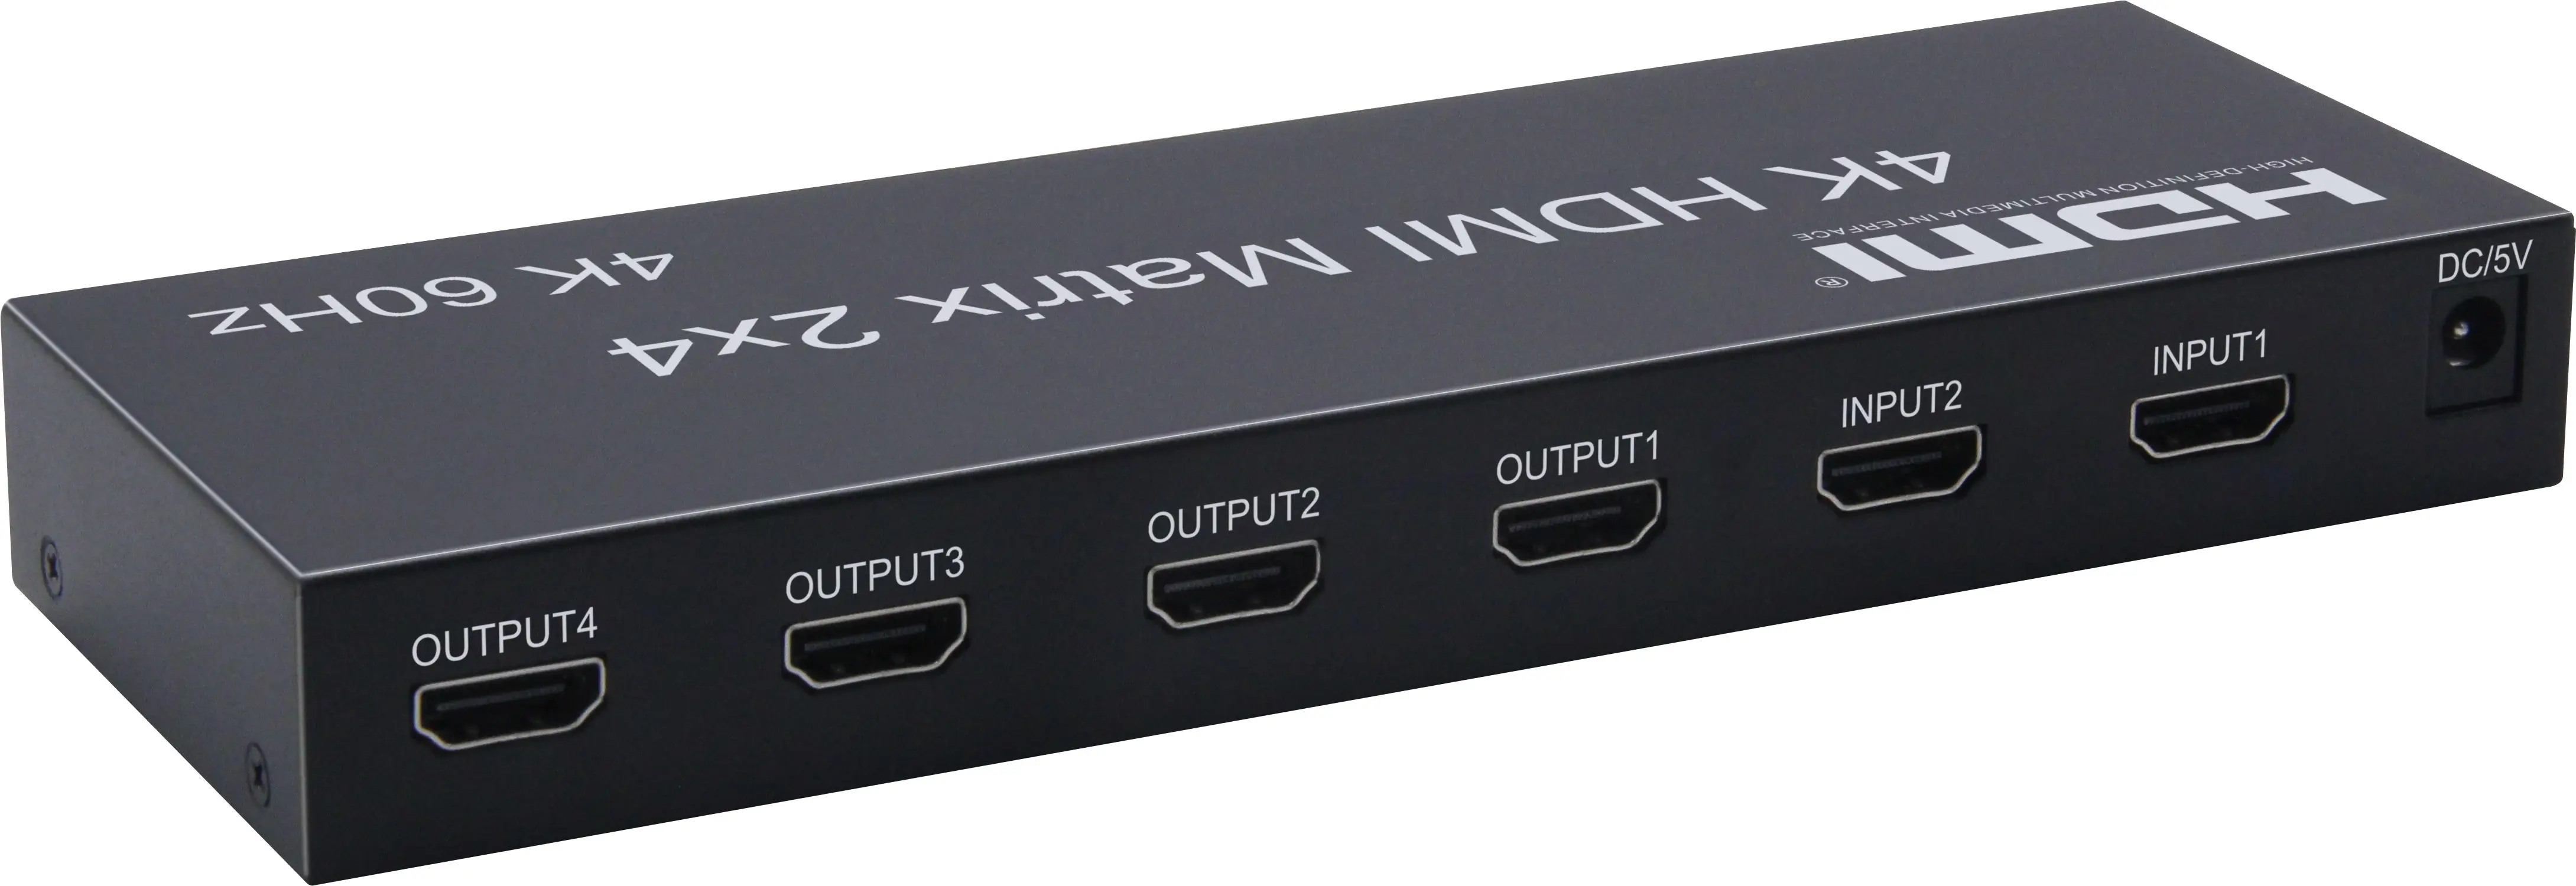 Matriz HDMI 2x4 4K @ 60Hz 2 entrada 4 salida HDMI matriz con óptica de audio estéreo de salida